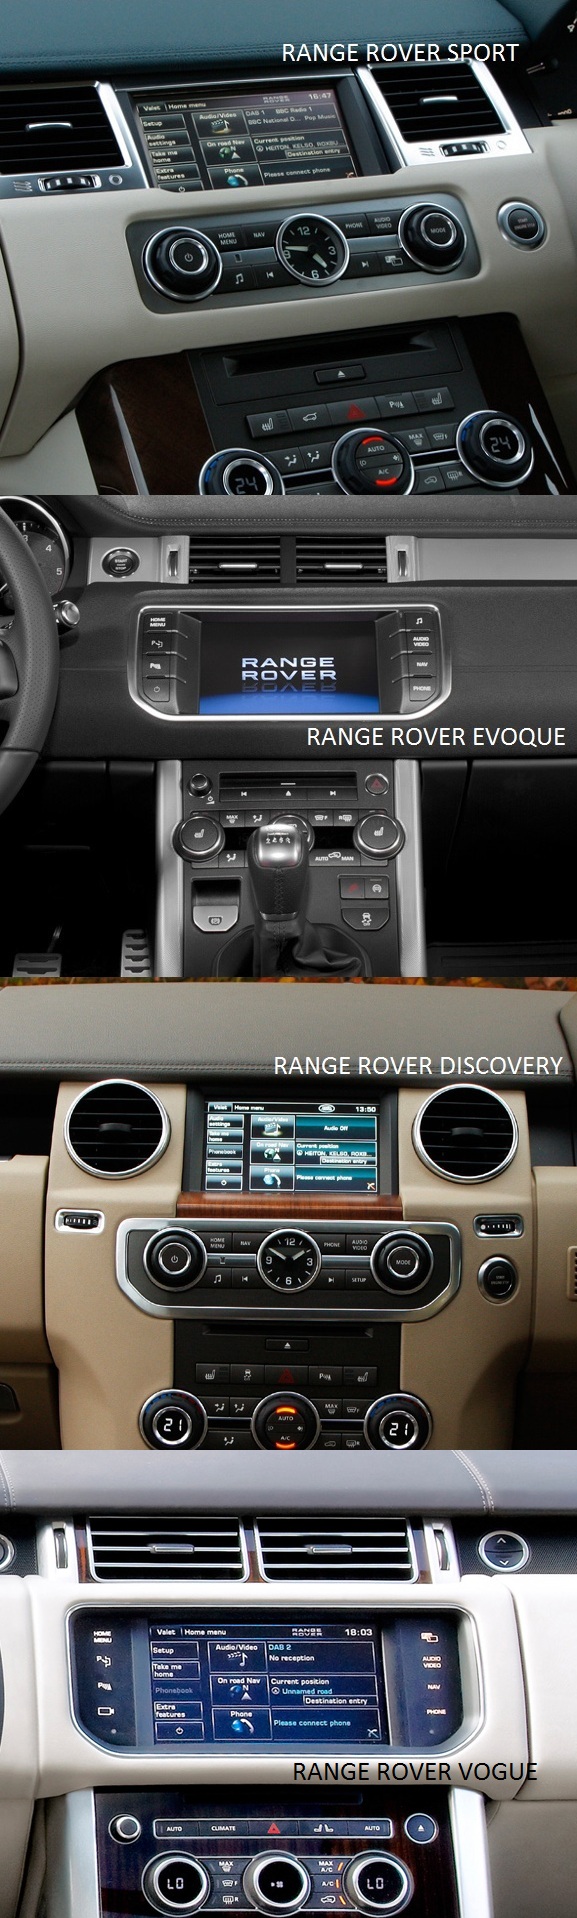 compatibilitate interfata audio video range rover 2012